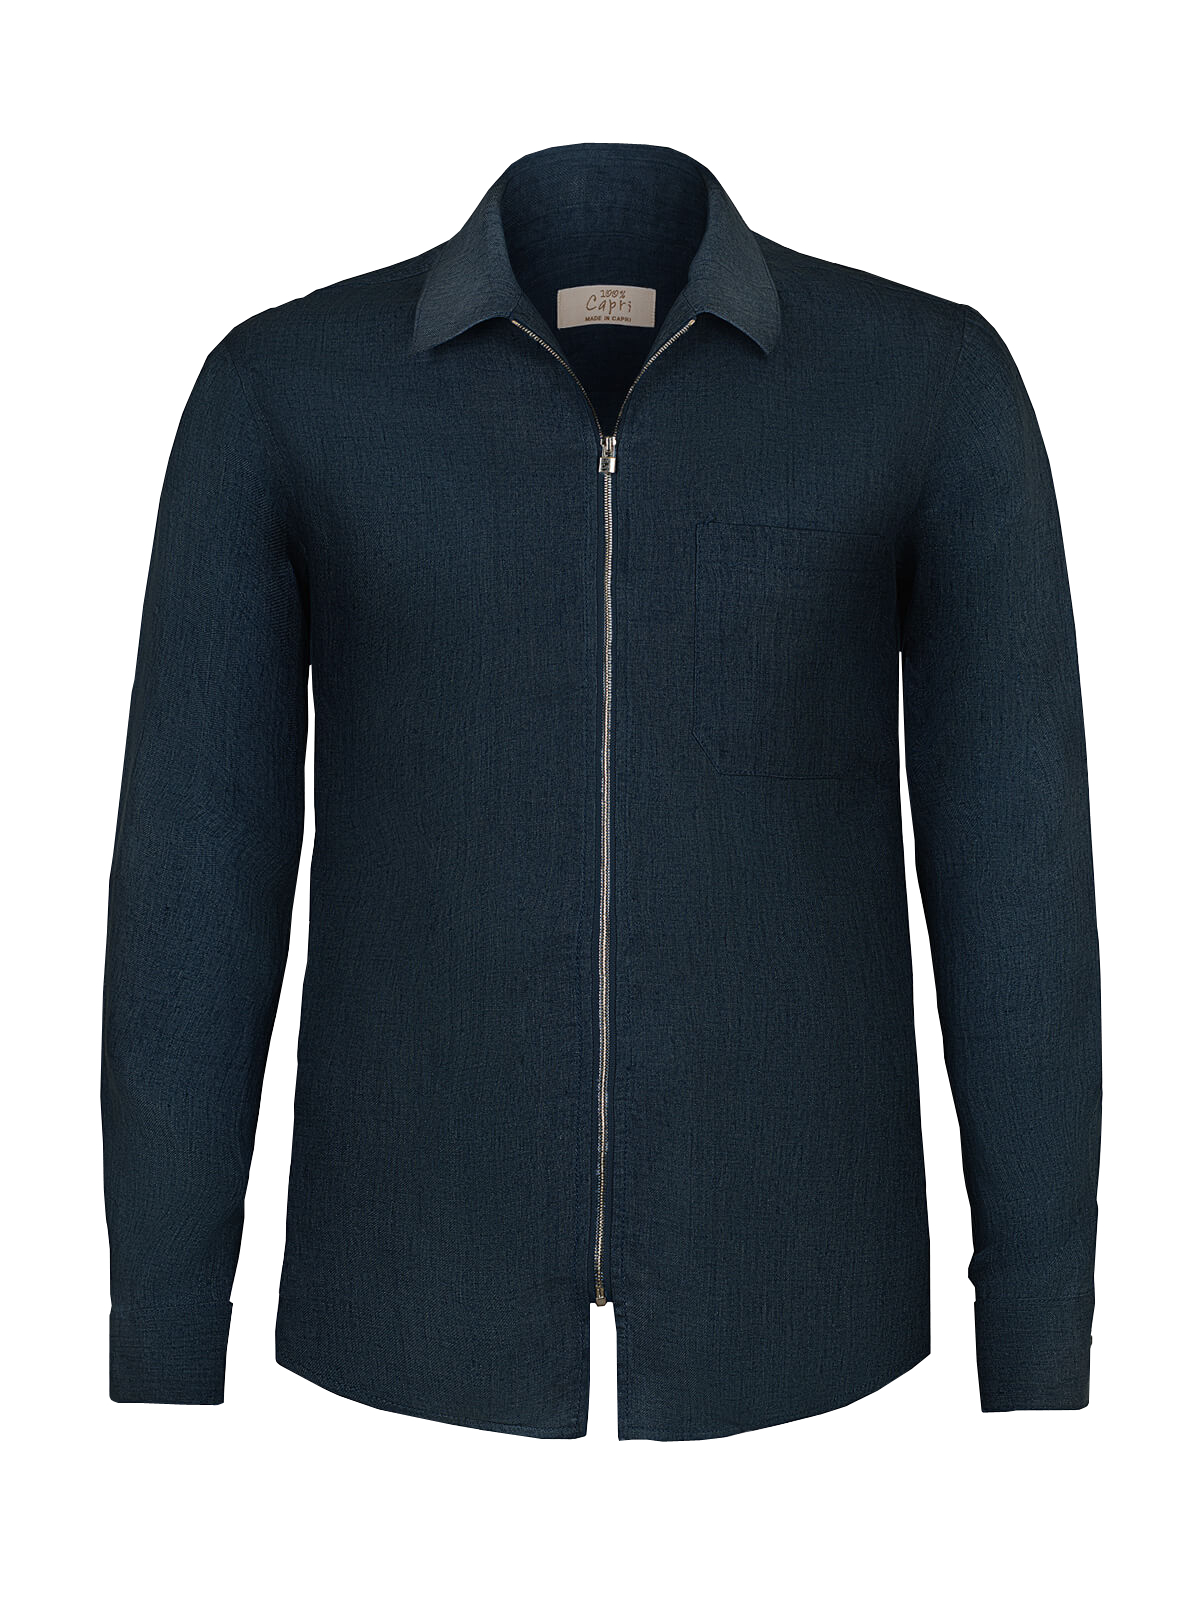 Camicia Zip Malta 100% Capri for man linen blue shirt front